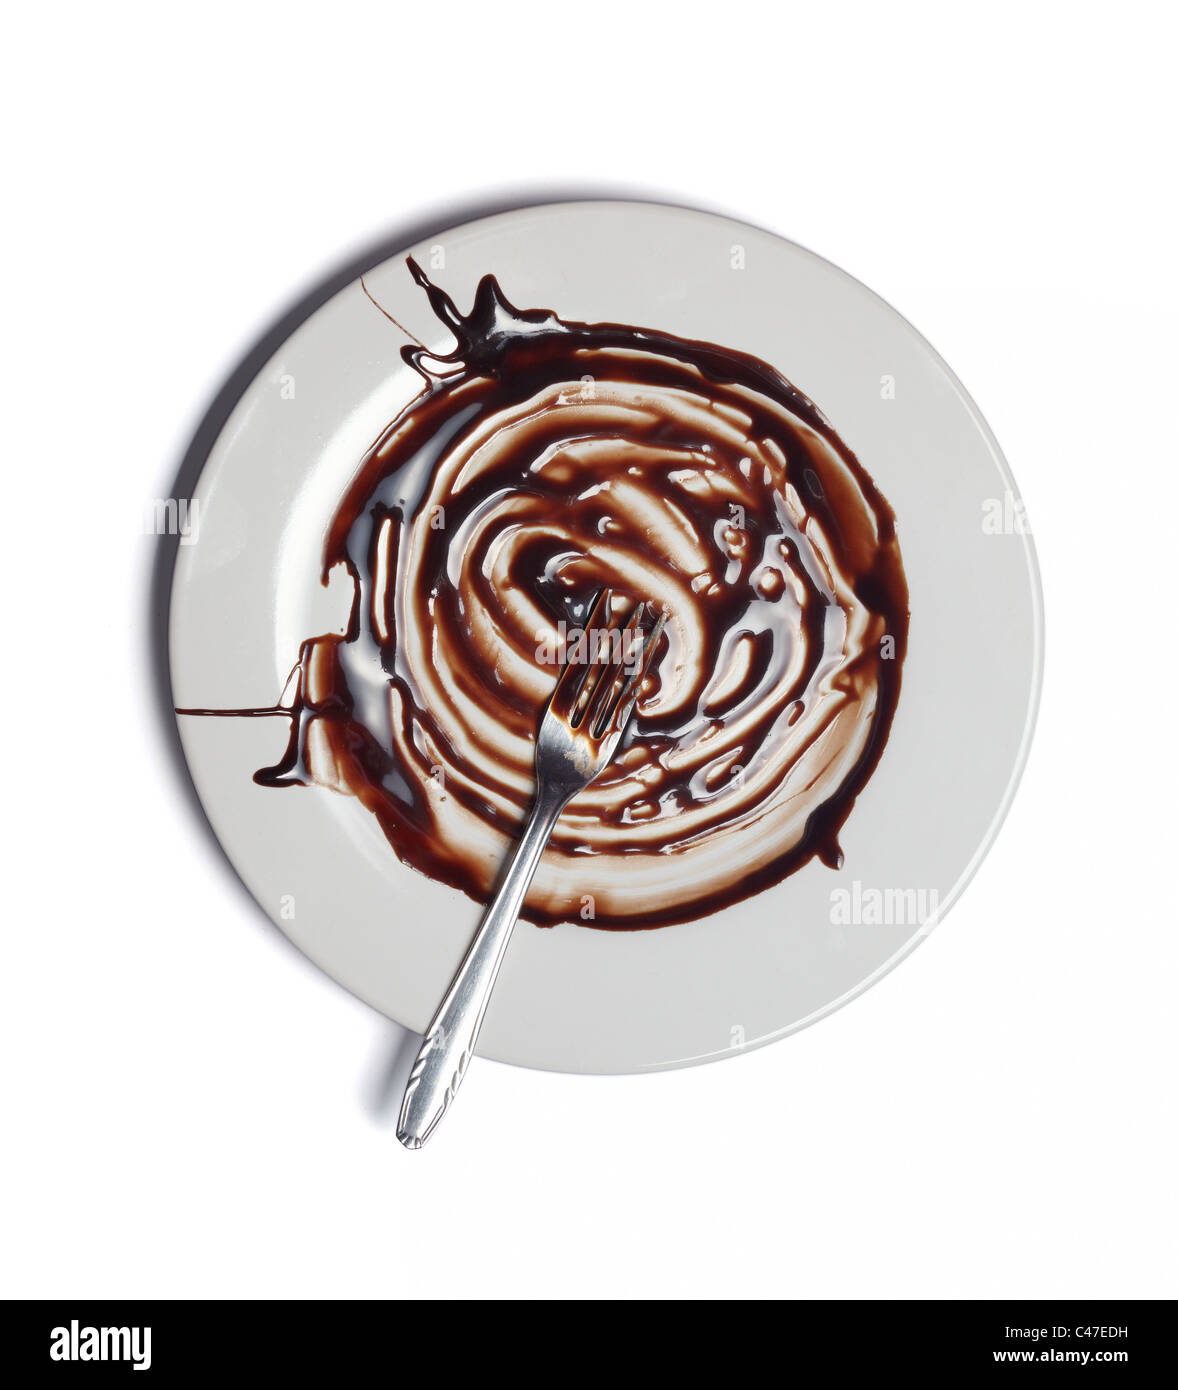 Close up de sirop de chocolat Banque D'Images